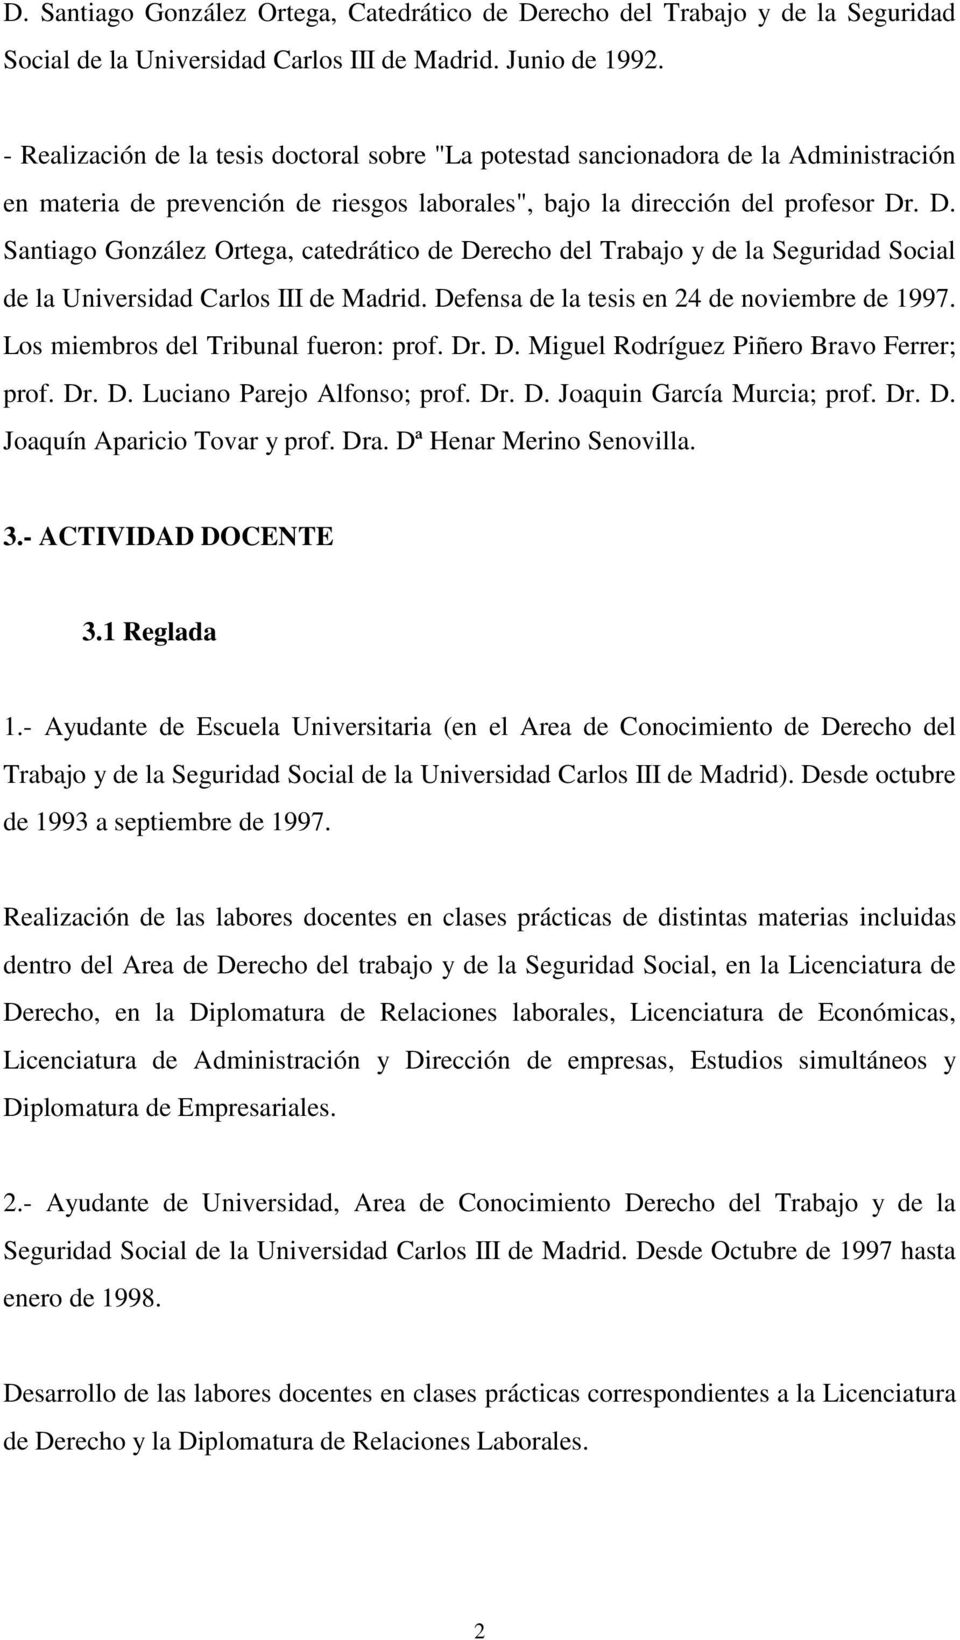 . D. Santiago González Ortega, catedrático de Derecho del Trabajo y de la Seguridad Social de la Universidad Carlos III de Madrid. Defensa de la tesis en 24 de noviembre de 1997.